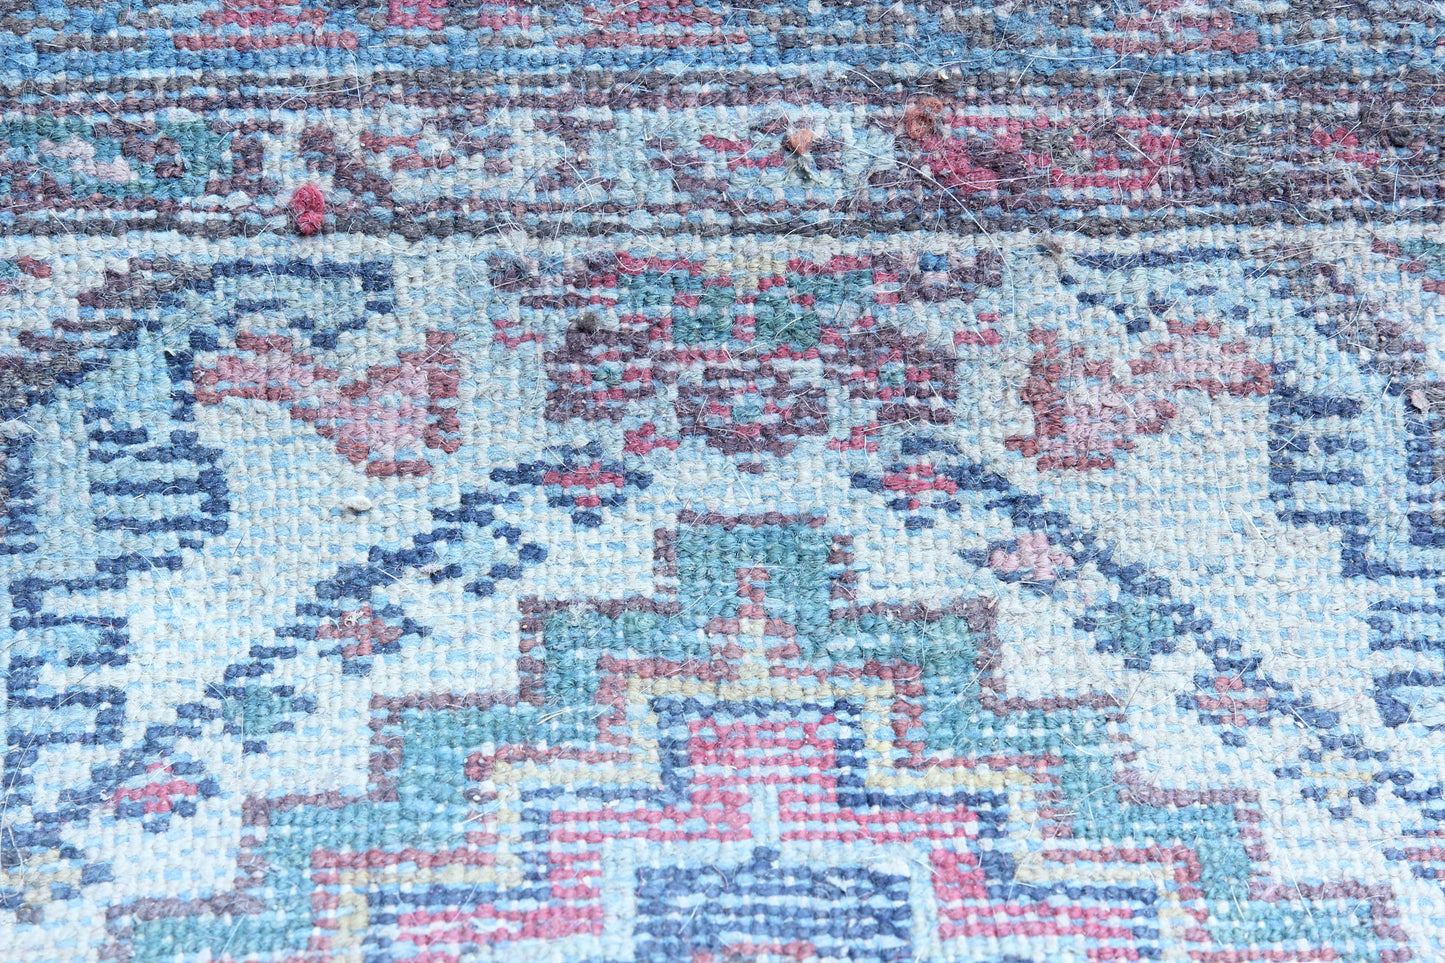 30" x 48" Vintage Handmade Rug